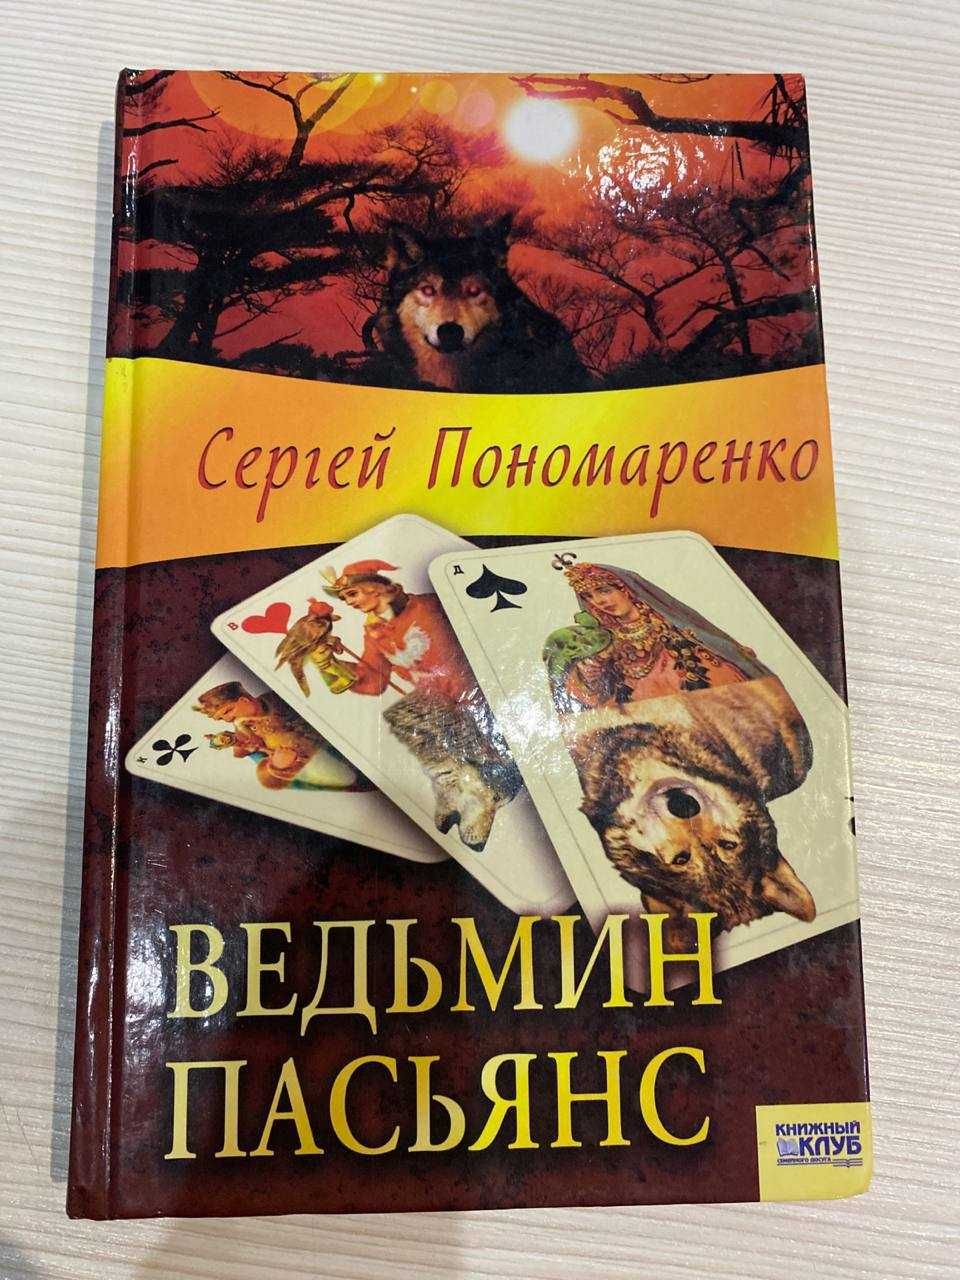 Книга Сергей Пономаренко "Ведьмин пасьянс"